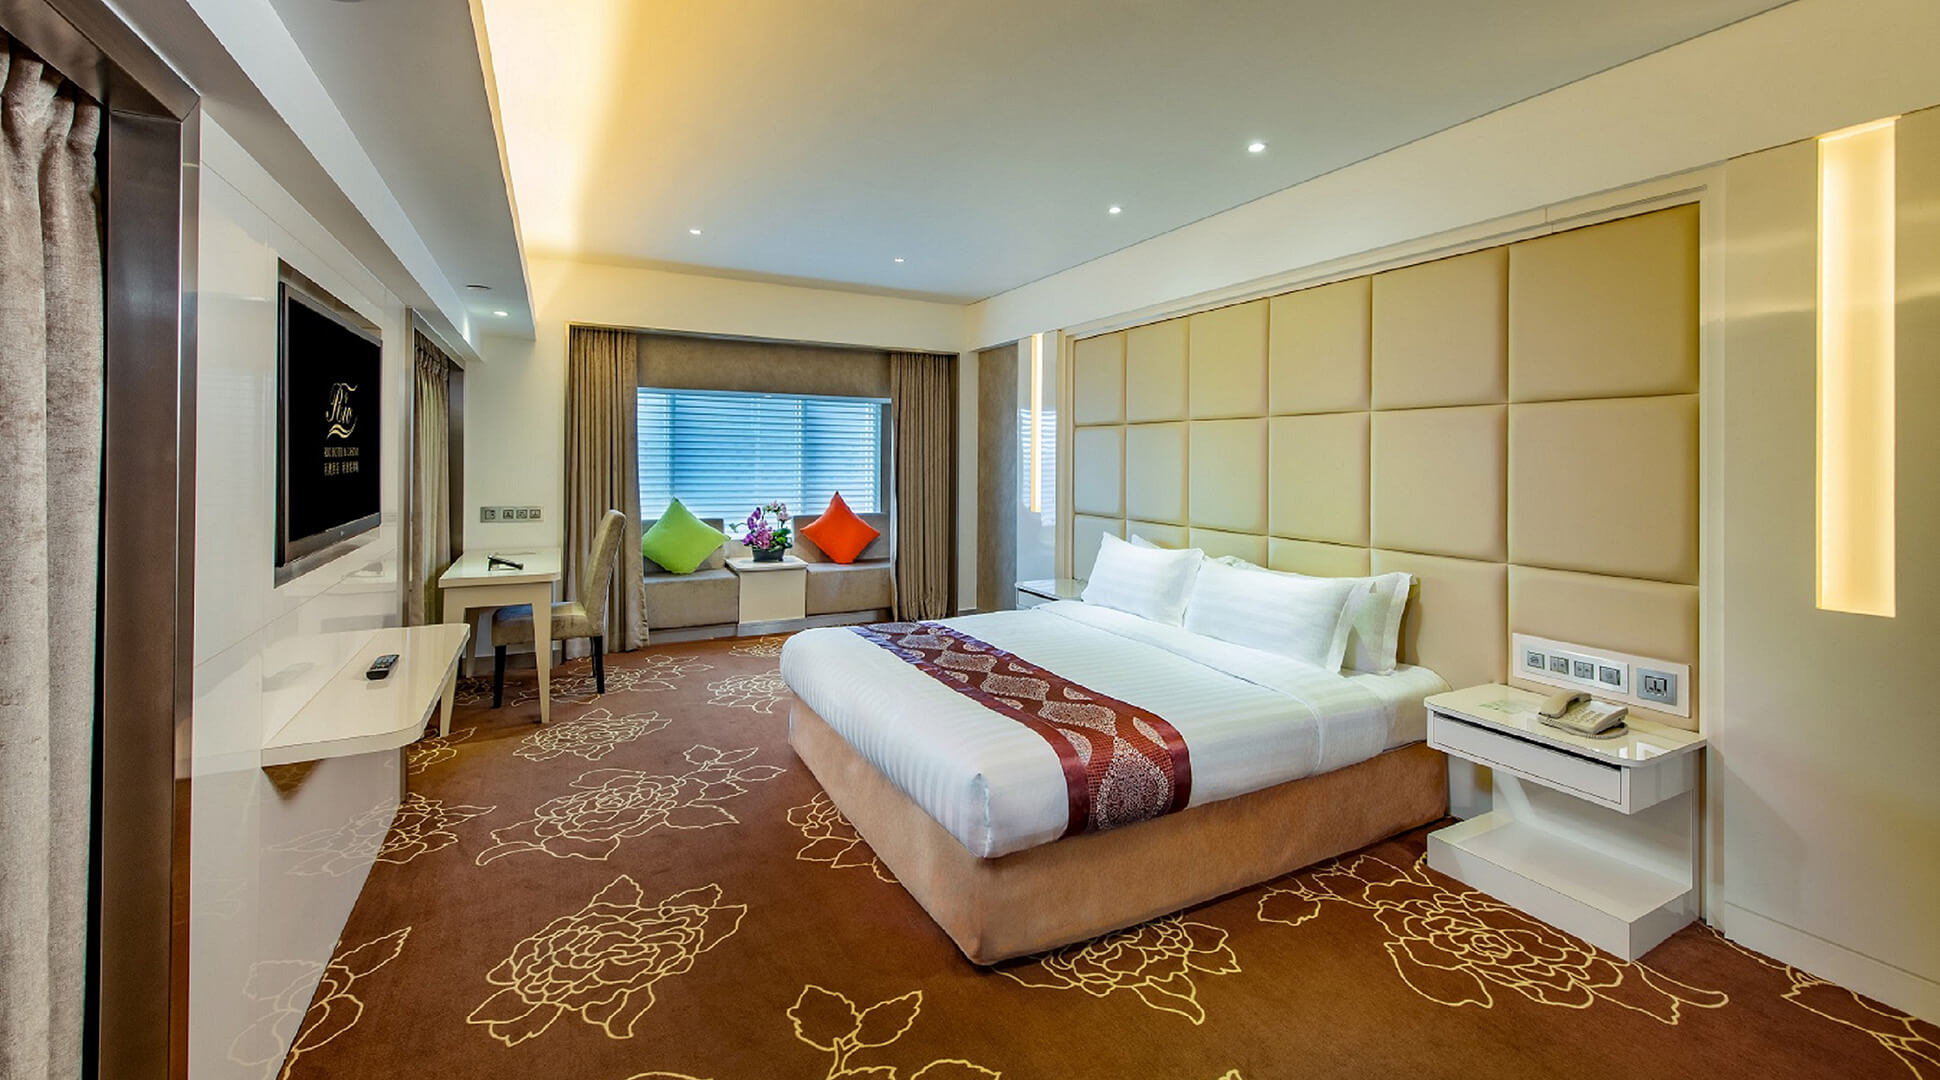 First Class Hotel Macau Luxury Hotel In Macau Budget